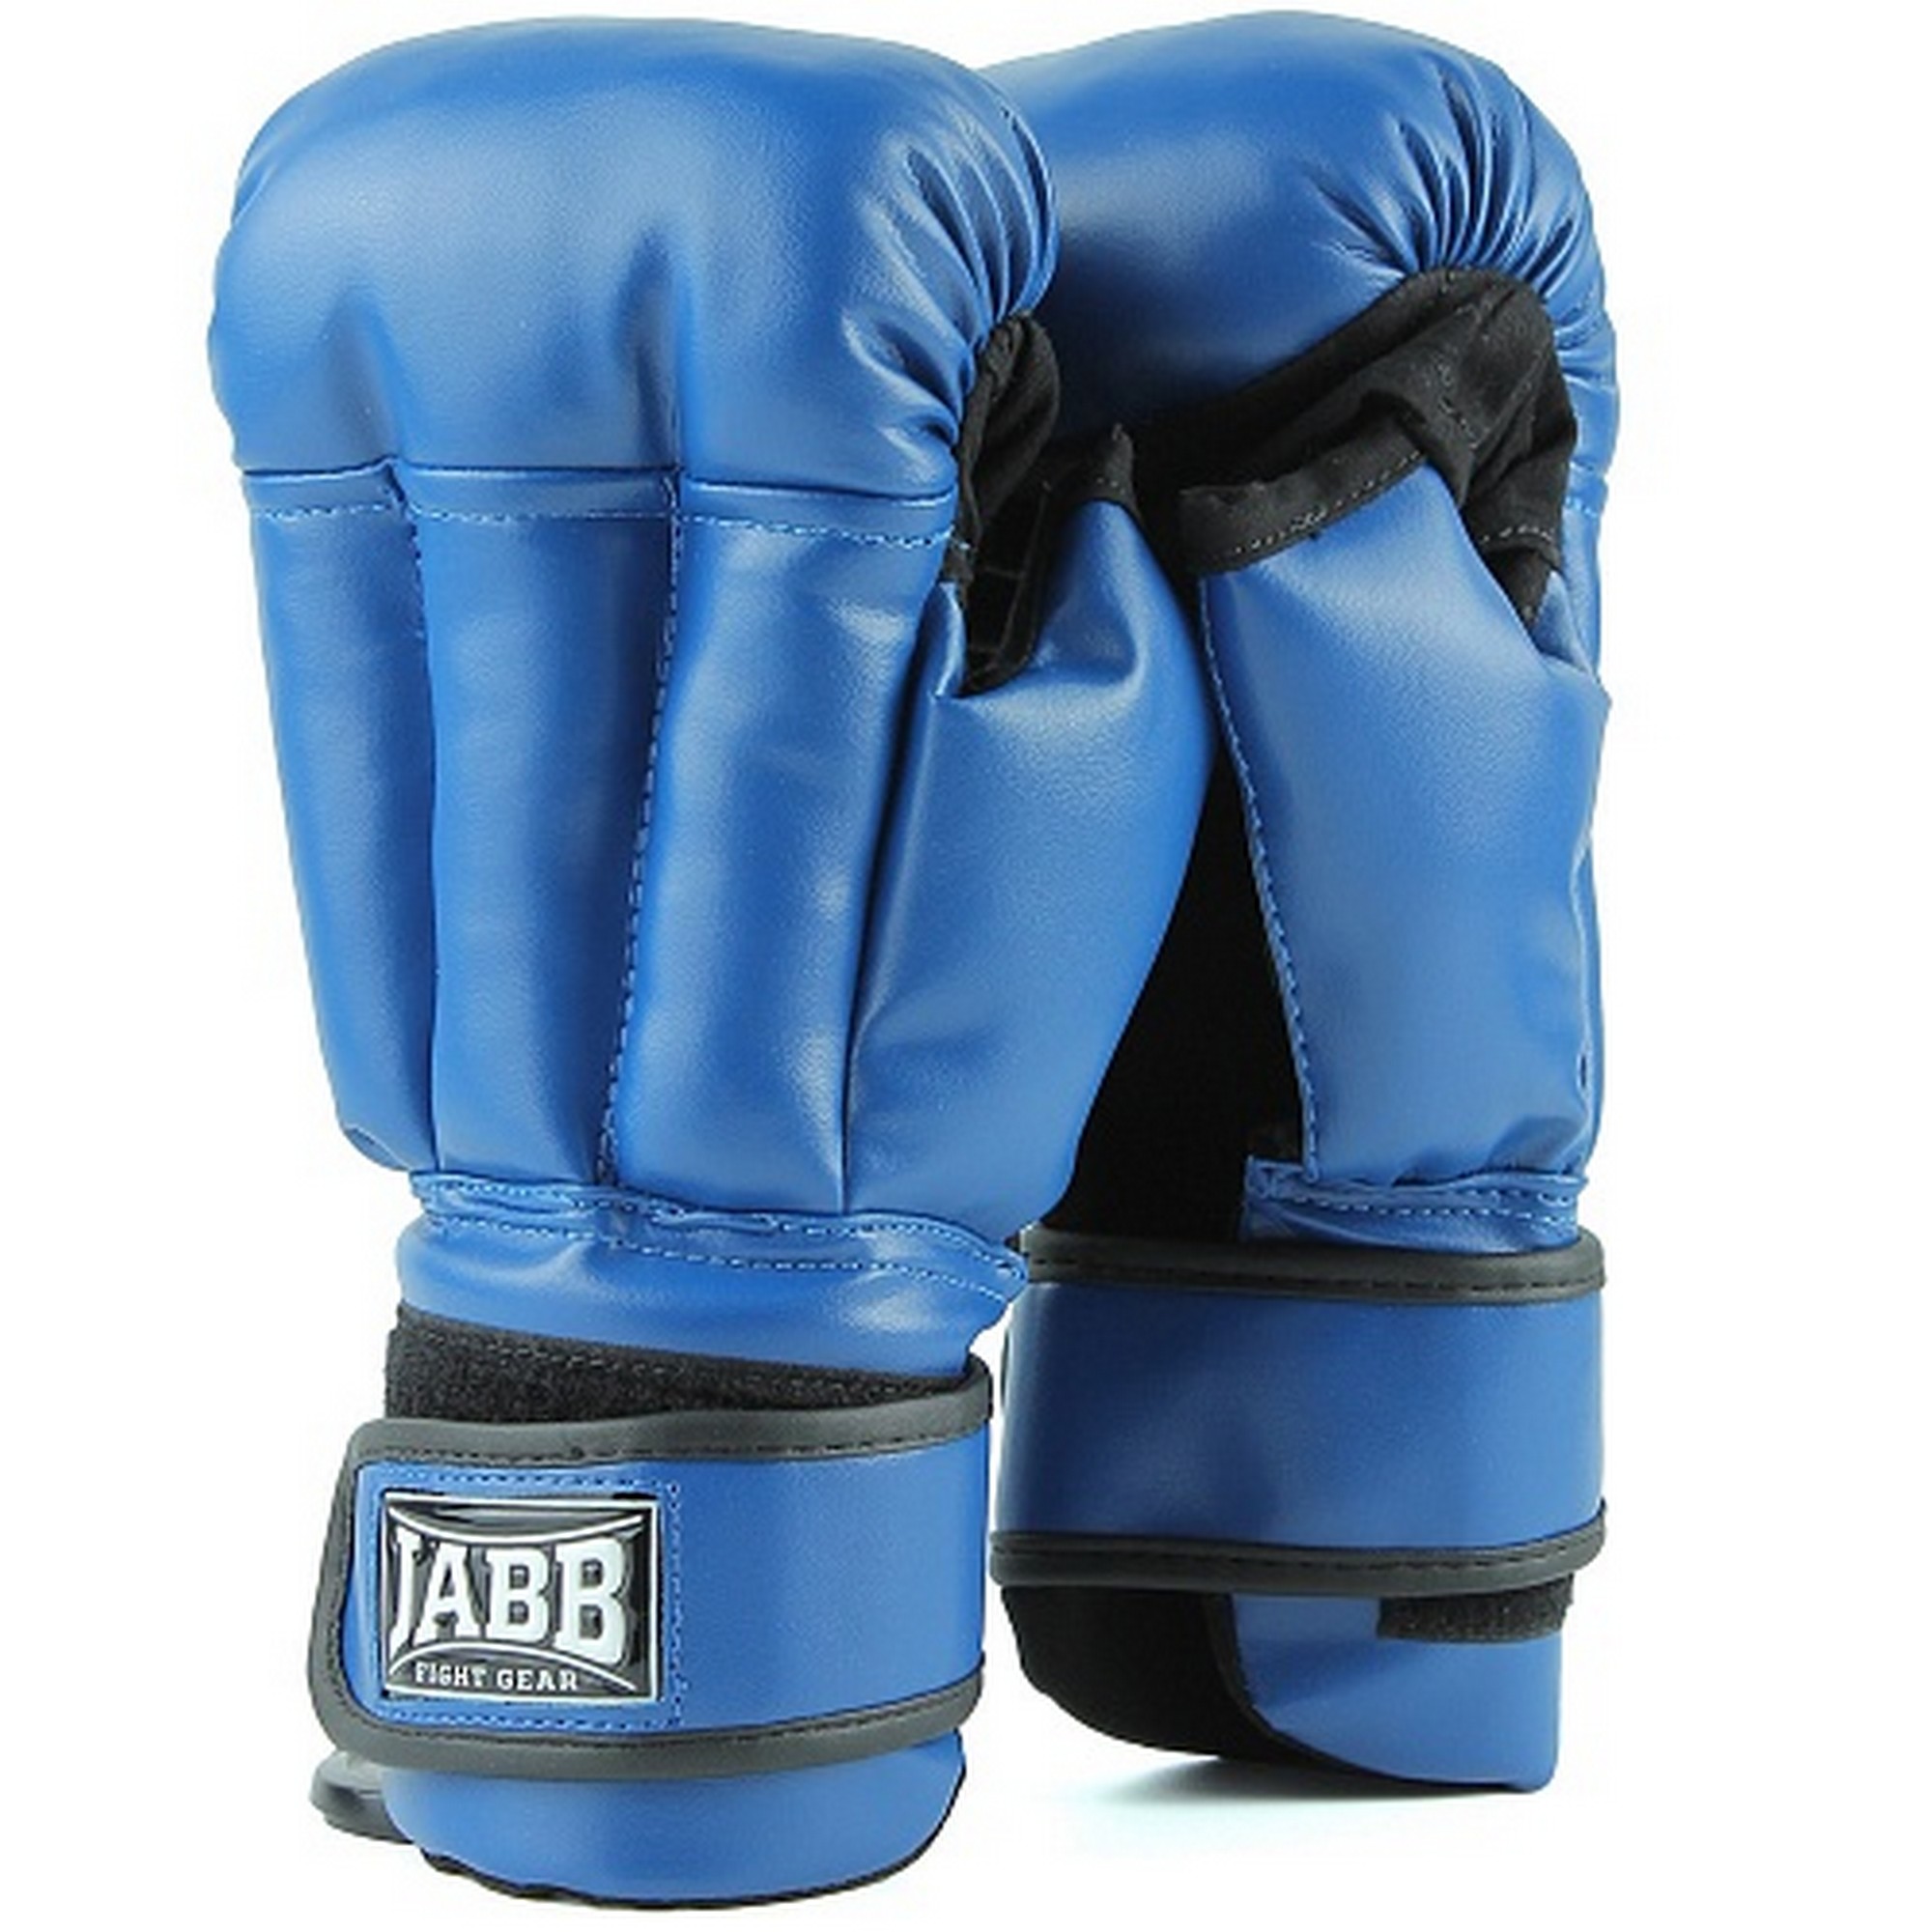 Купить Перчатки для рукопашного боя (иск.кожа) Jabb JE-3633 синий,